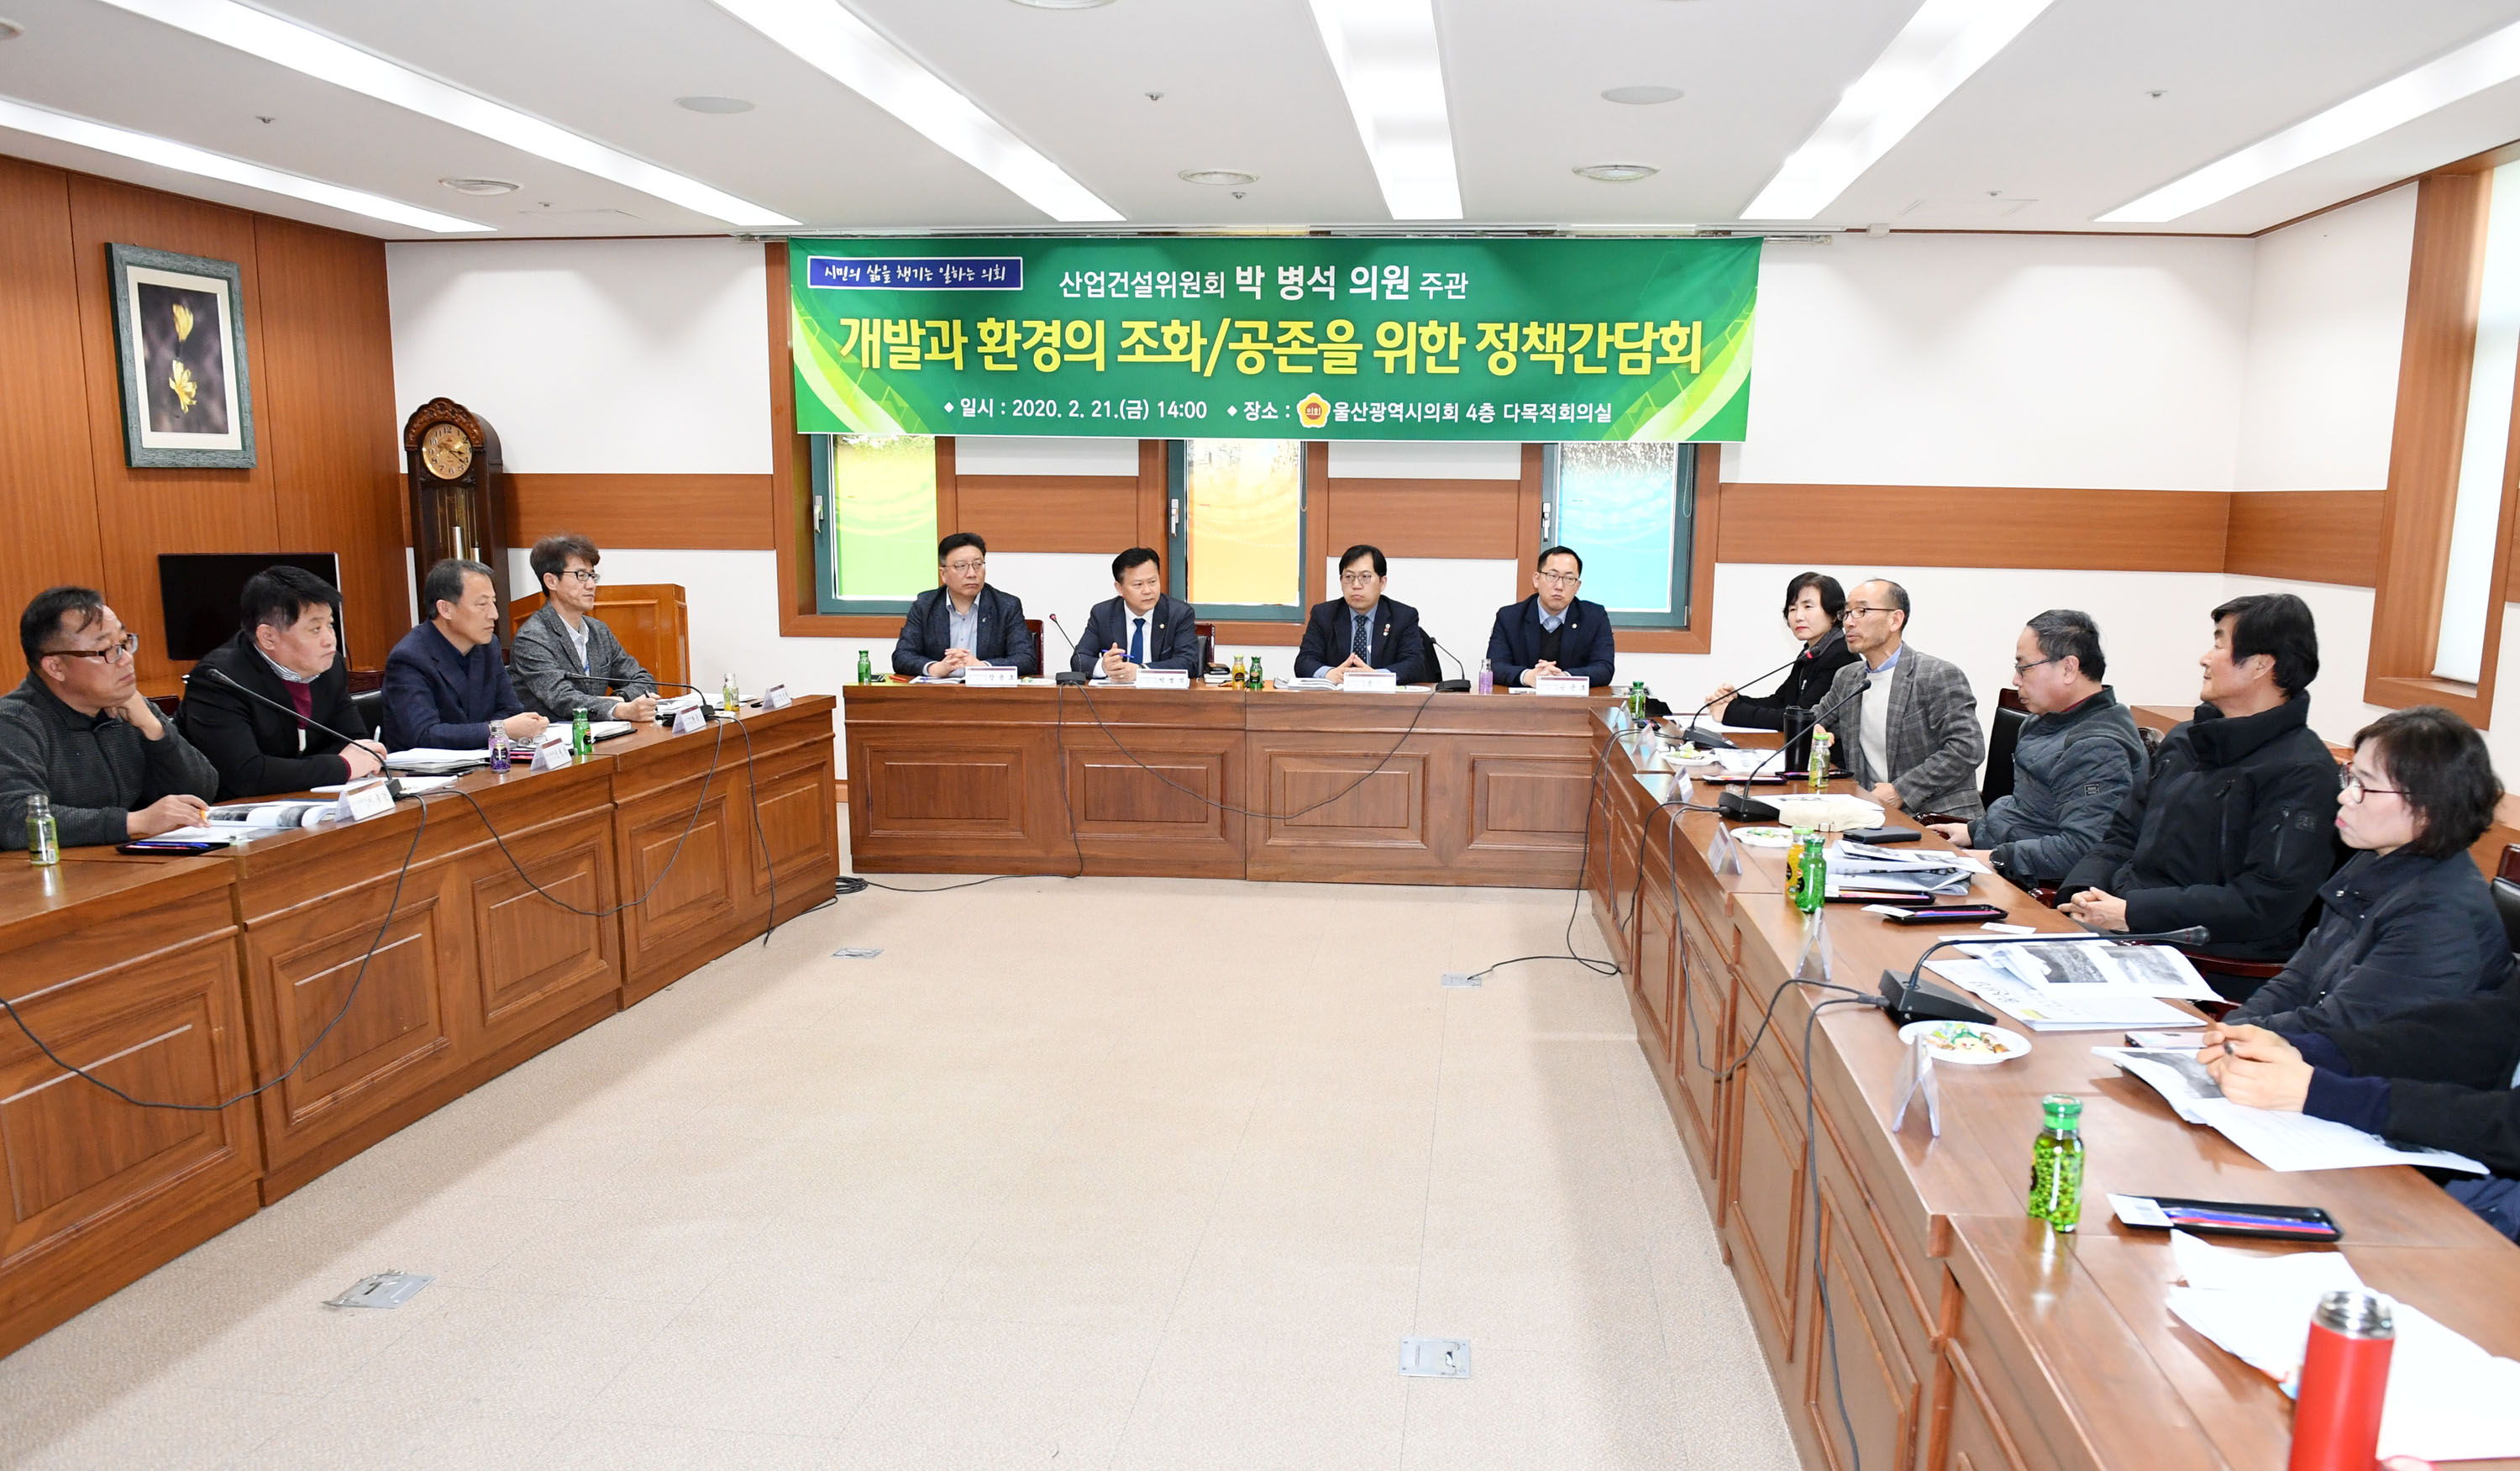 박병석 의원 개발과 환경의 조화/공존을 위한 정책간담회 개최3